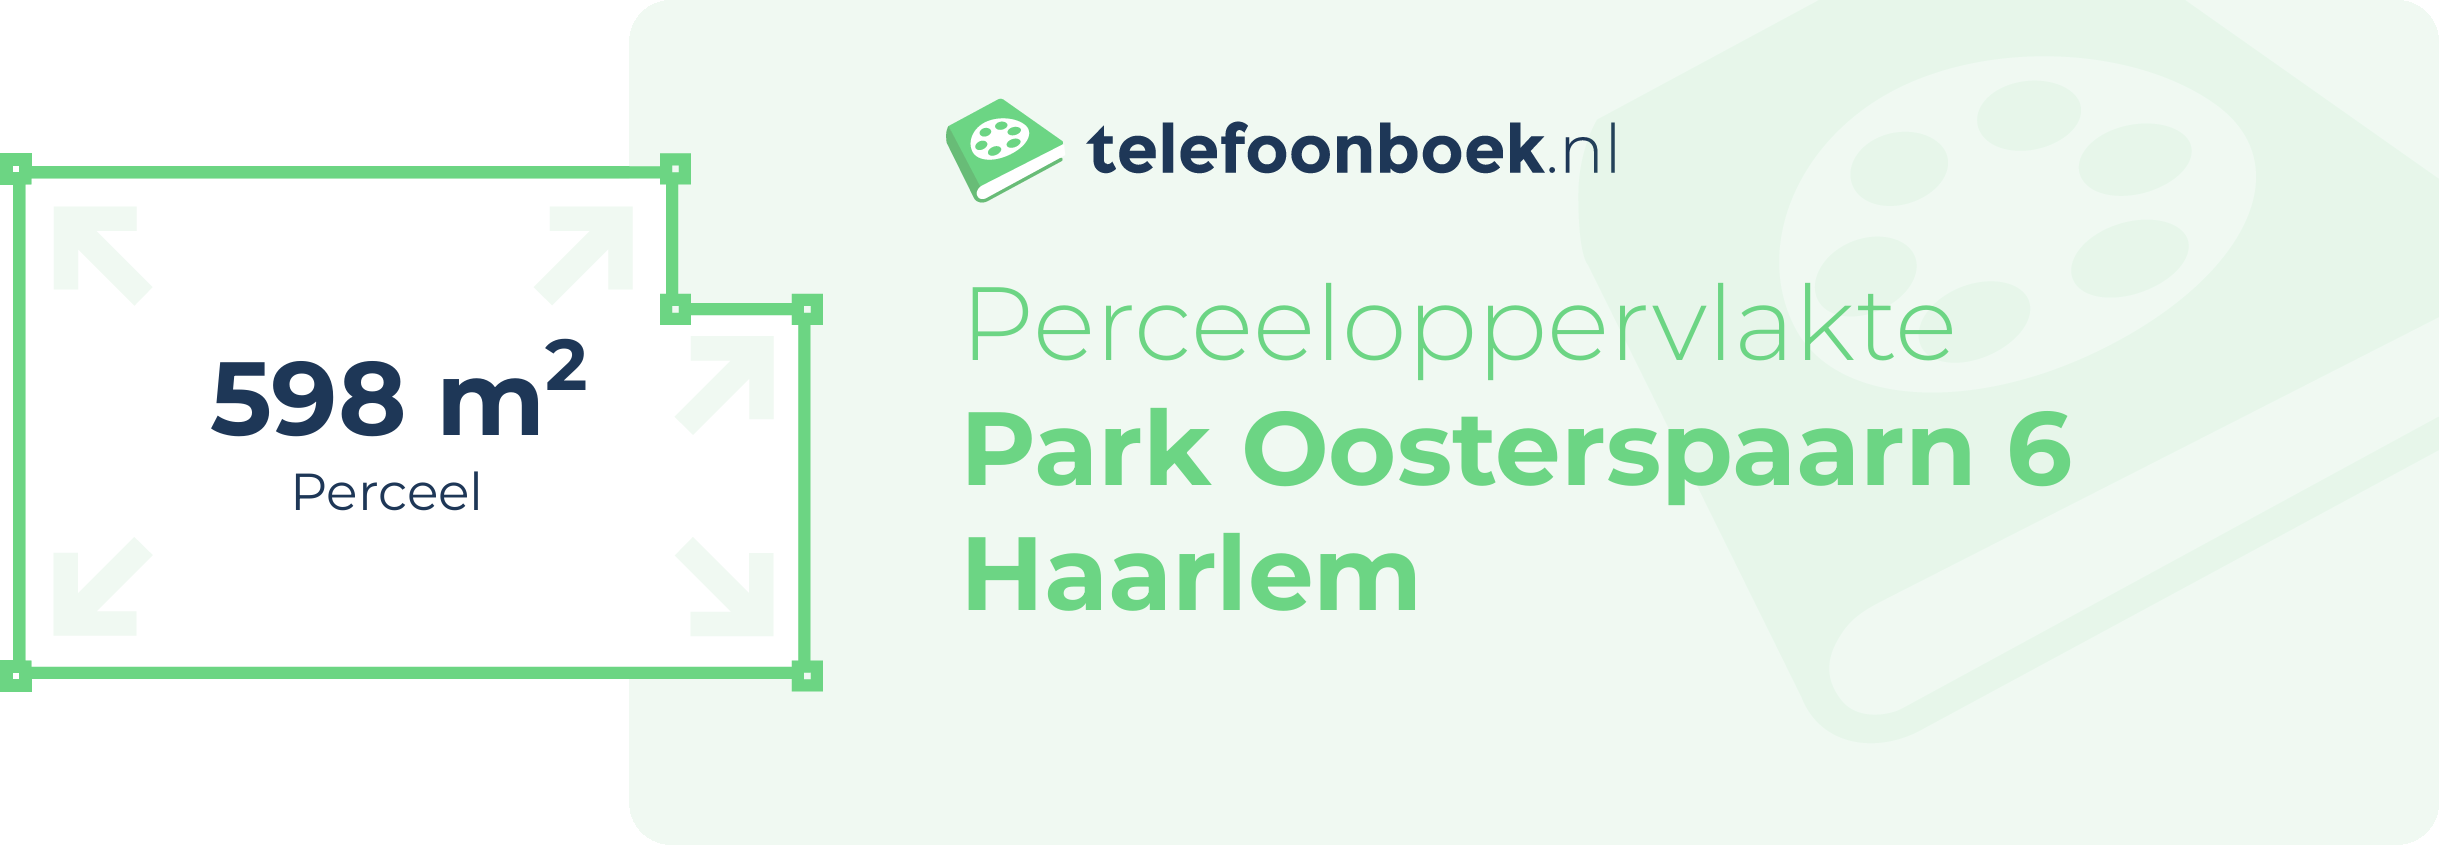 Perceeloppervlakte Park Oosterspaarn 6 Haarlem